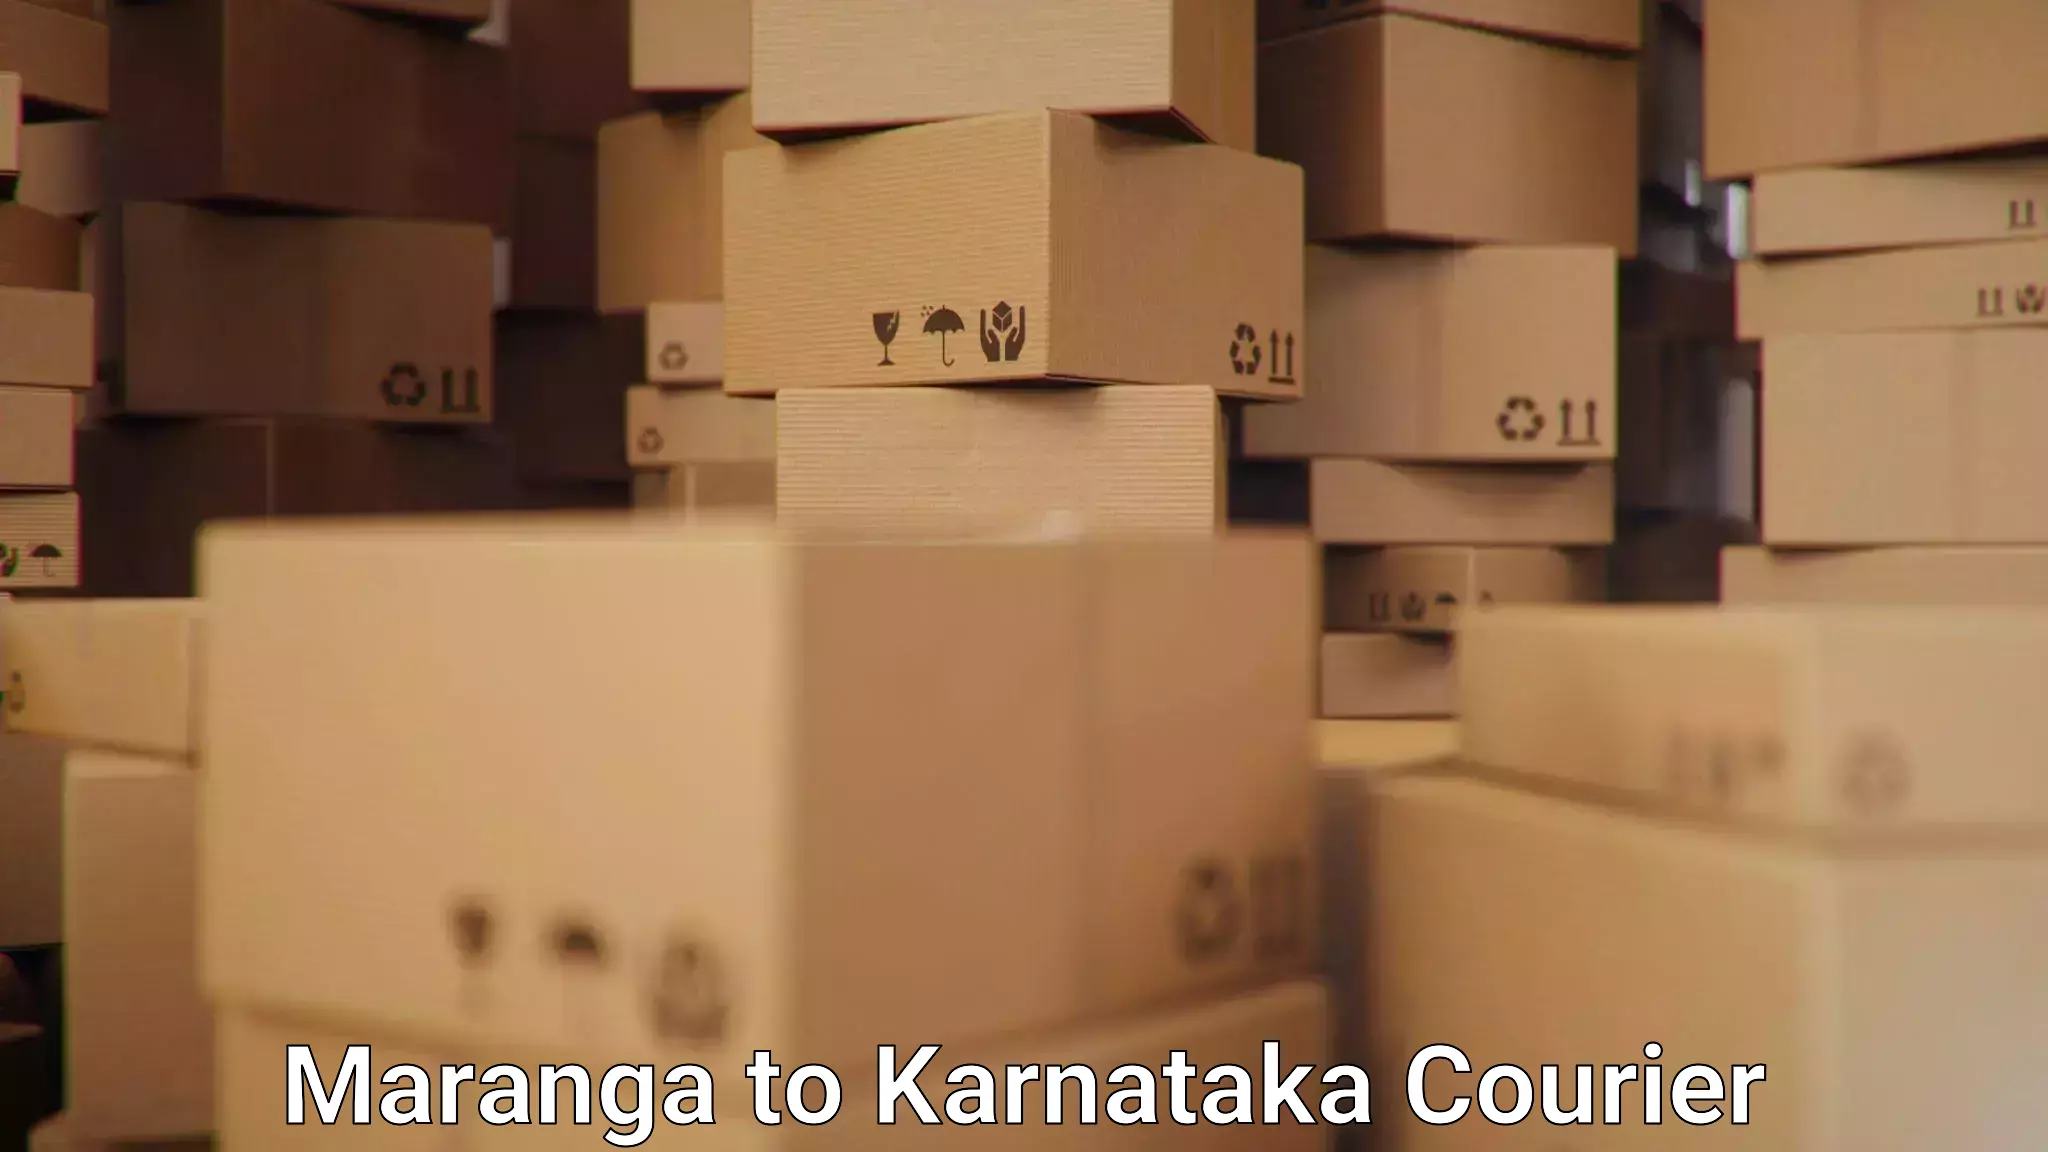 High-capacity courier solutions Maranga to Toranagallu